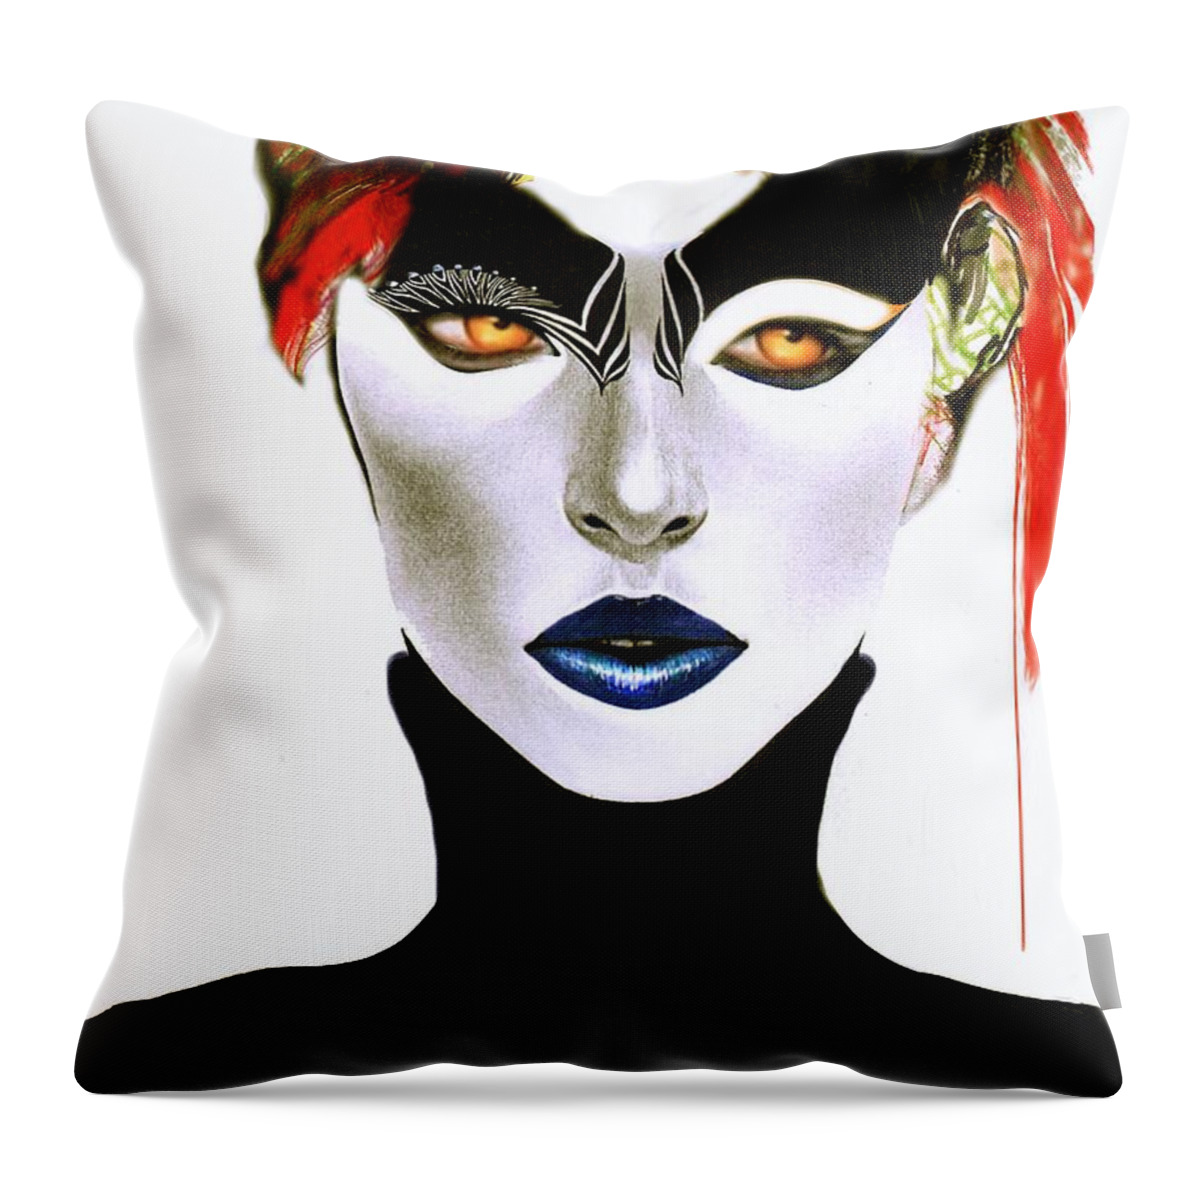 Art Throw Pillow featuring the digital art Blue Lips by Rafael Salazar